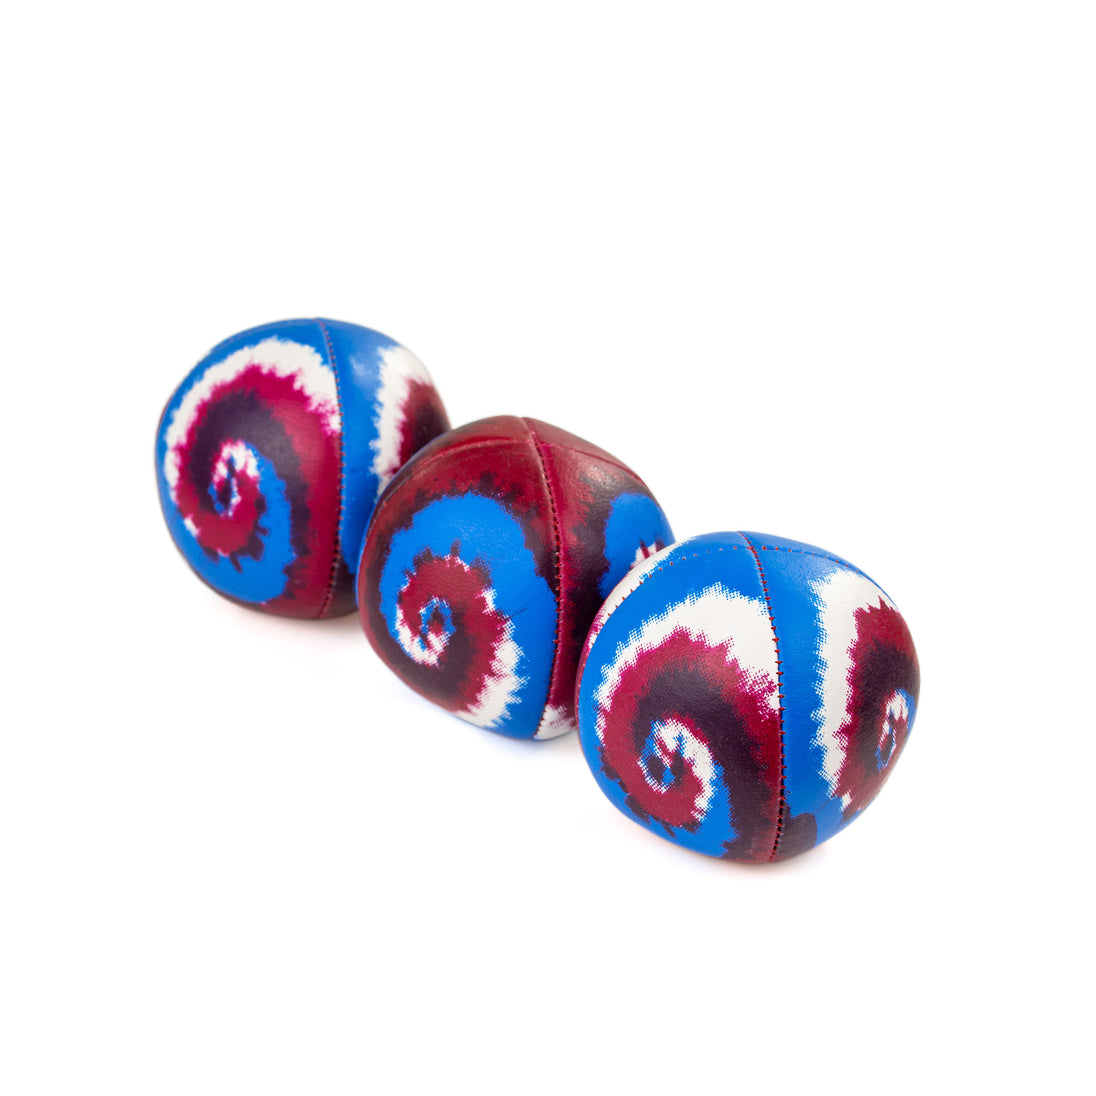 3 Festival Tye Dye Swirls - Blue / White / Red Swirl upside down